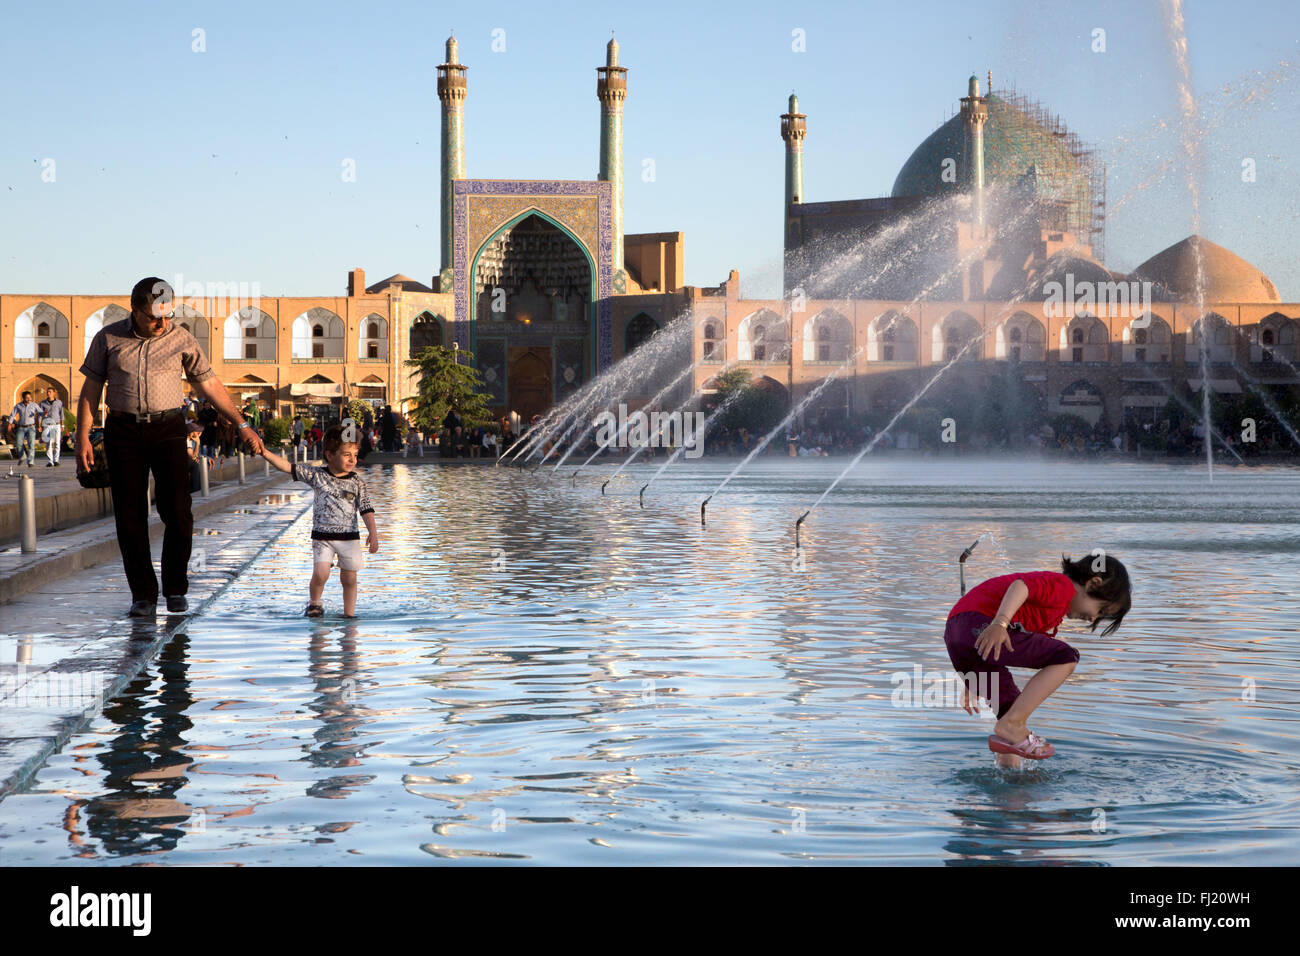 La fin de l'après-midi à Naqsh-e Jahan Square, l'un des sites du patrimoine mondial de l'UNESCO, Ispahan Banque D'Images